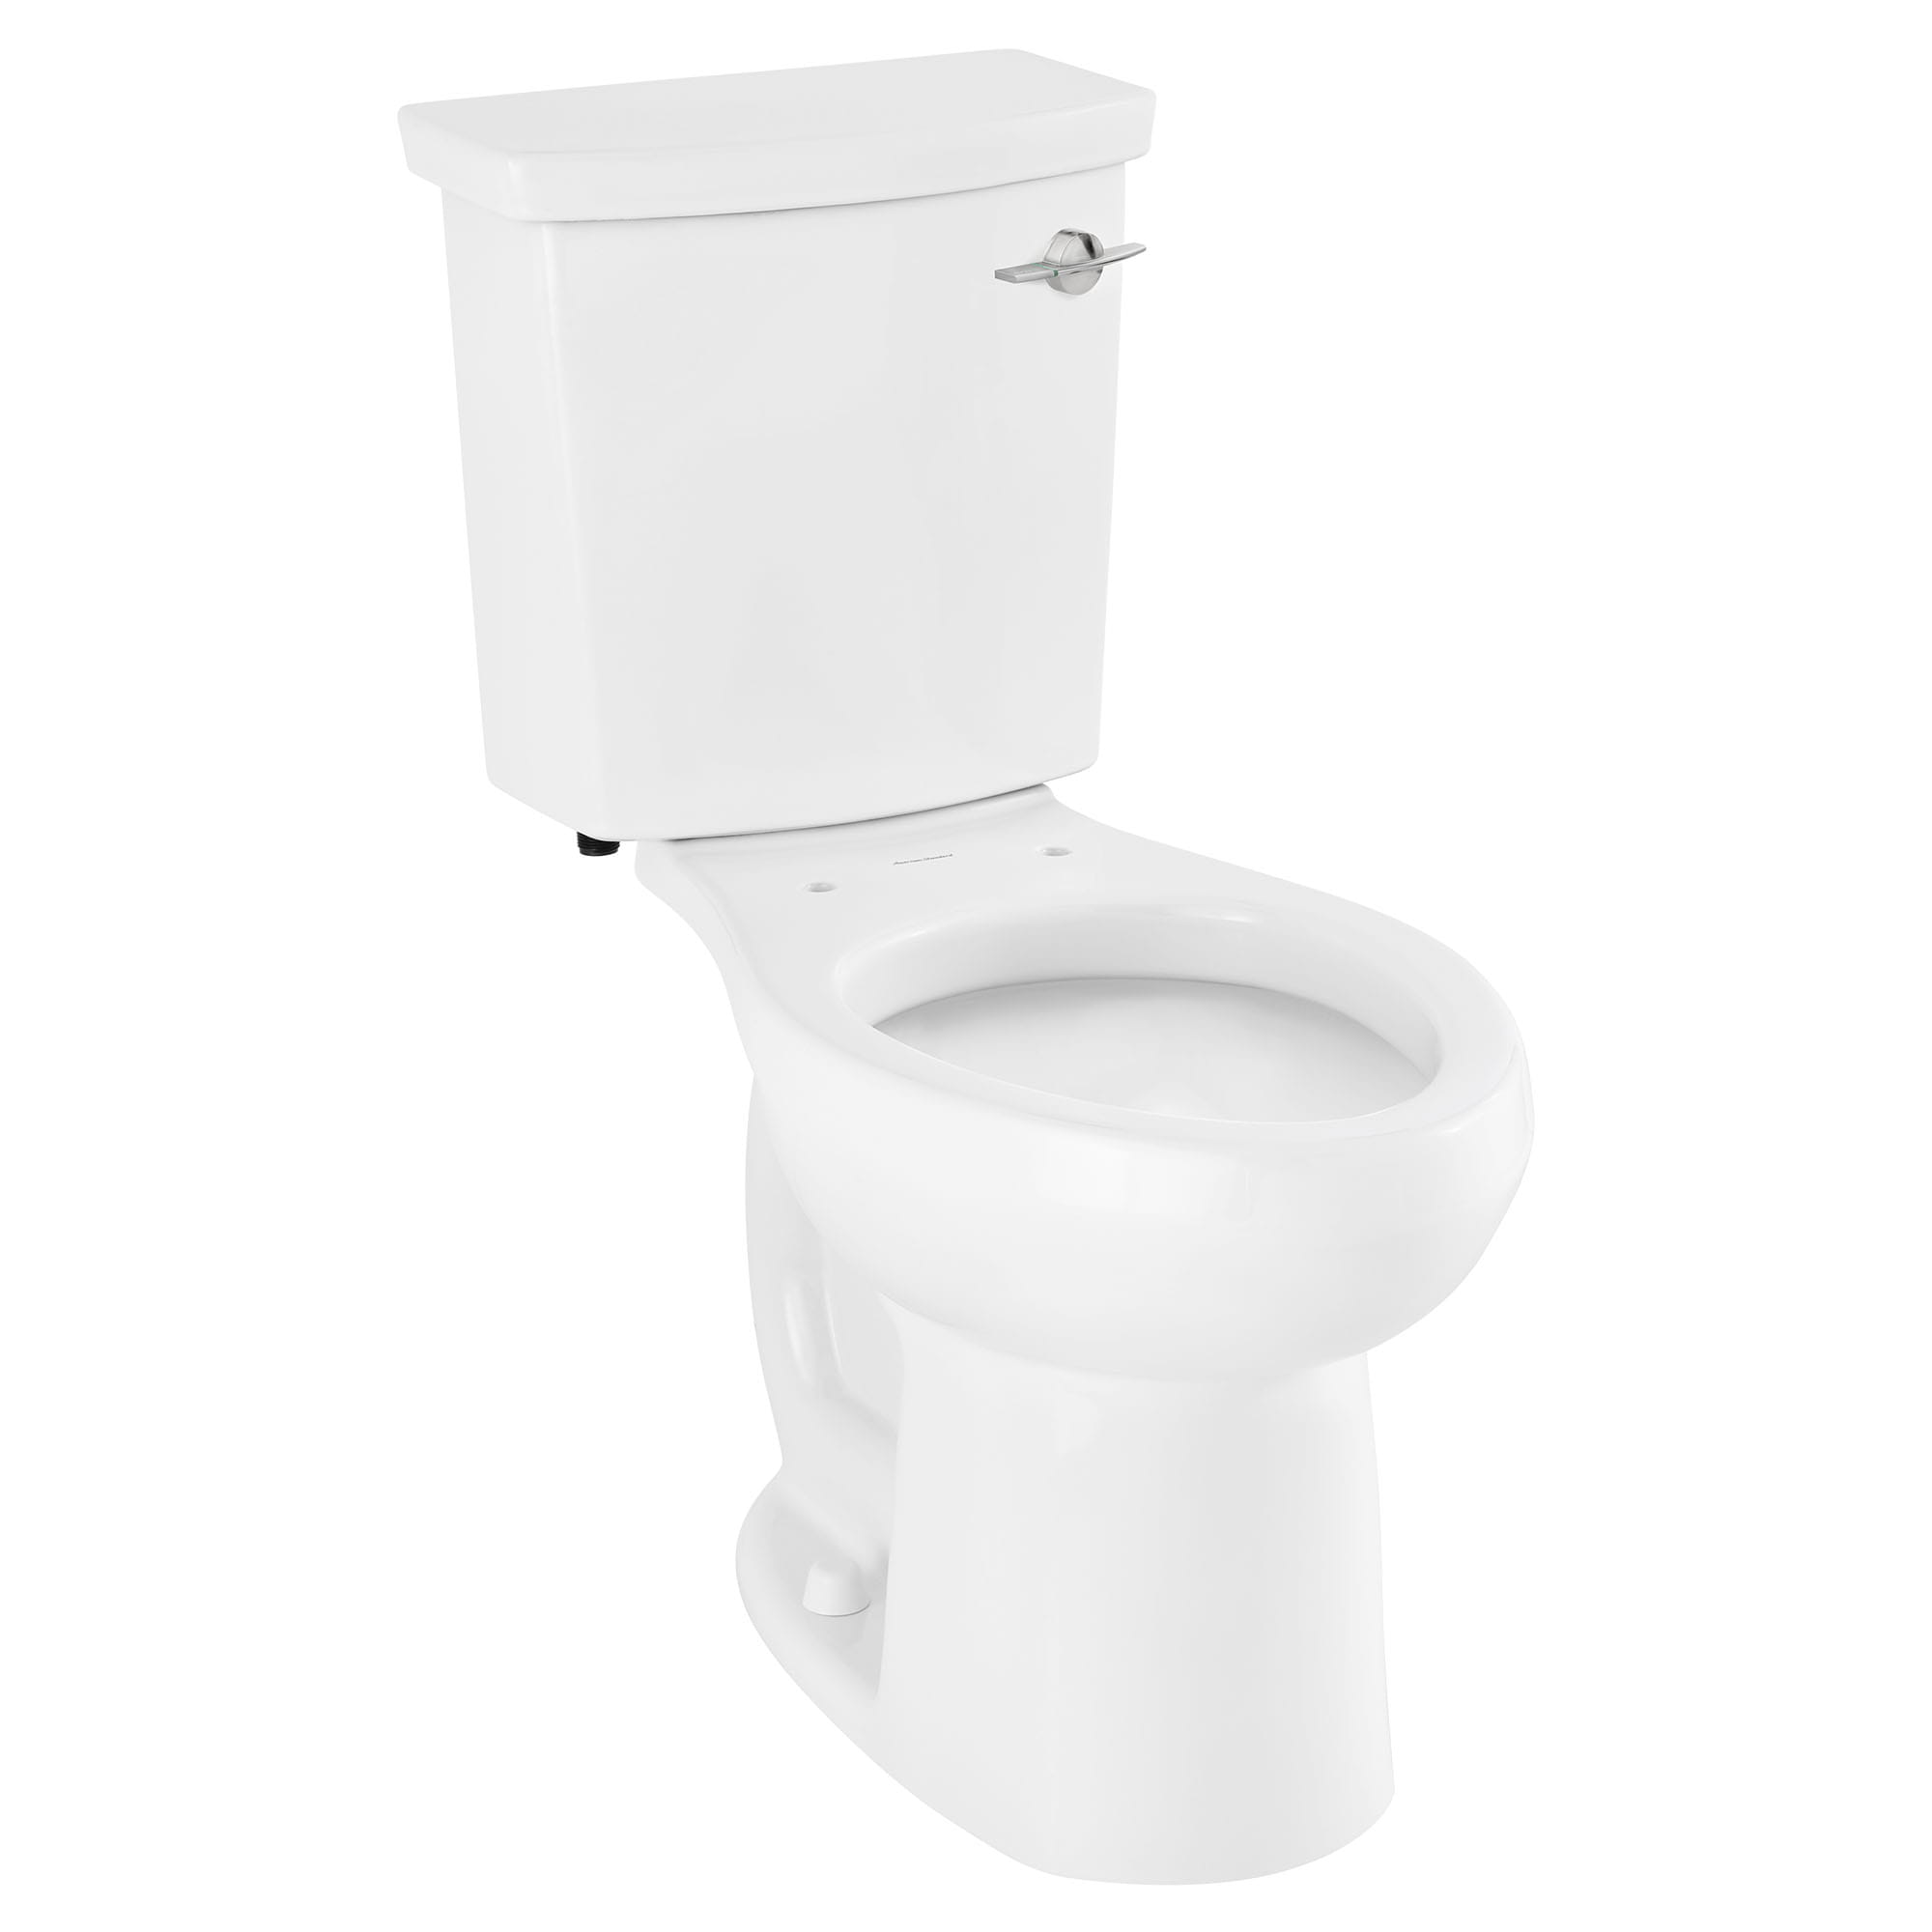 Toilette H2Option ADA, 2 pièces, chasse double 1,28 gpc/4,8 lpc et 0,92 gpc/3,5 lpc, à cuvette allongée à hauteur de chaise, levier de déclenchement à droite, sans siège